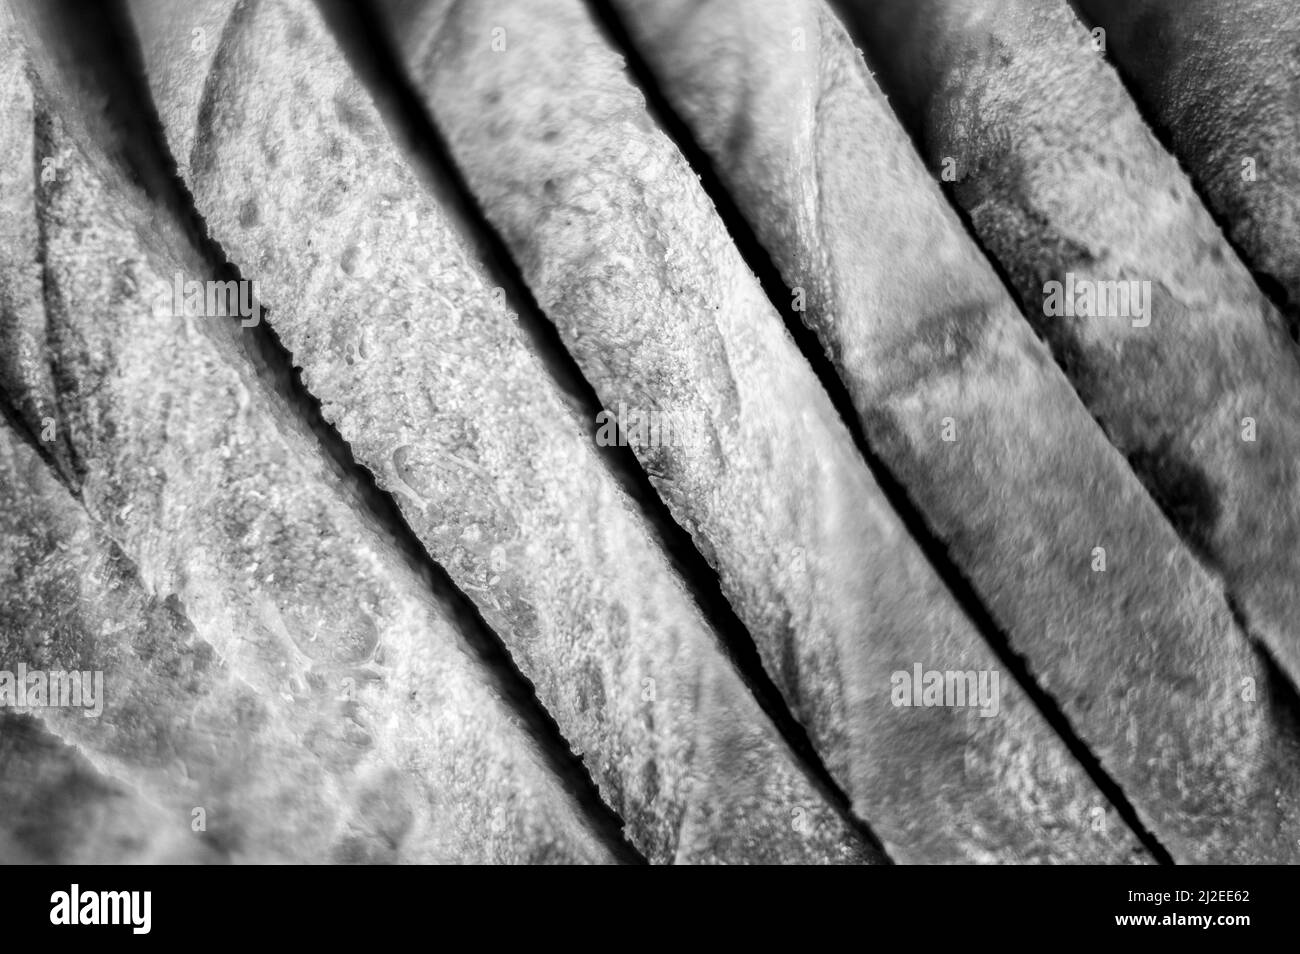 Scheiben von weißem Brot Nahaufnahme als Hintergrund. Grauer Hintergrund der rauhen strukturierten Oberfläche gehackte Stücke Laib von natürlichen Bio-Lebensmitteln. Draufsicht. Getönte i Stockfoto